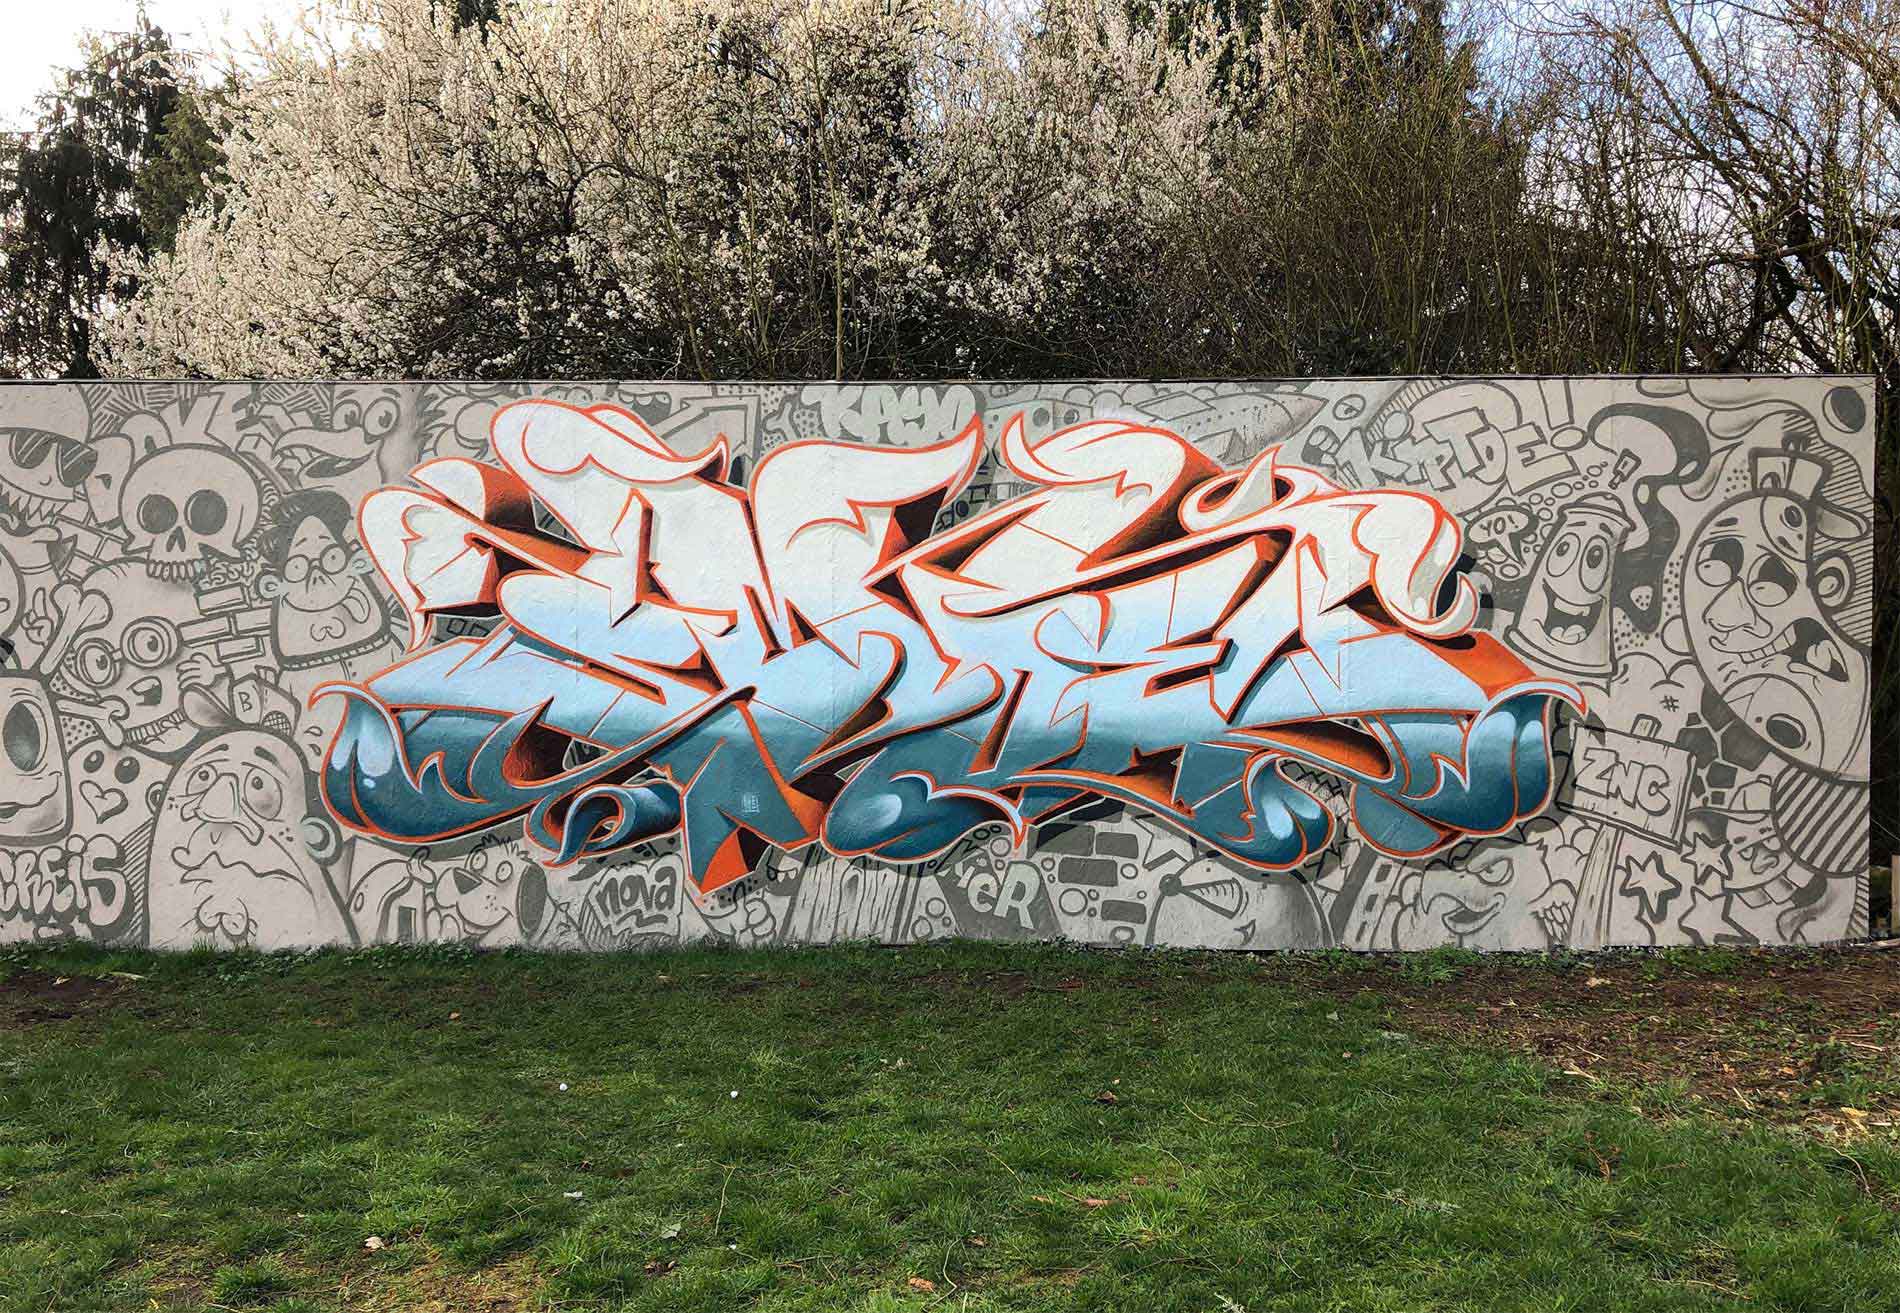 Smoe Nova Graffiti piece mural wall